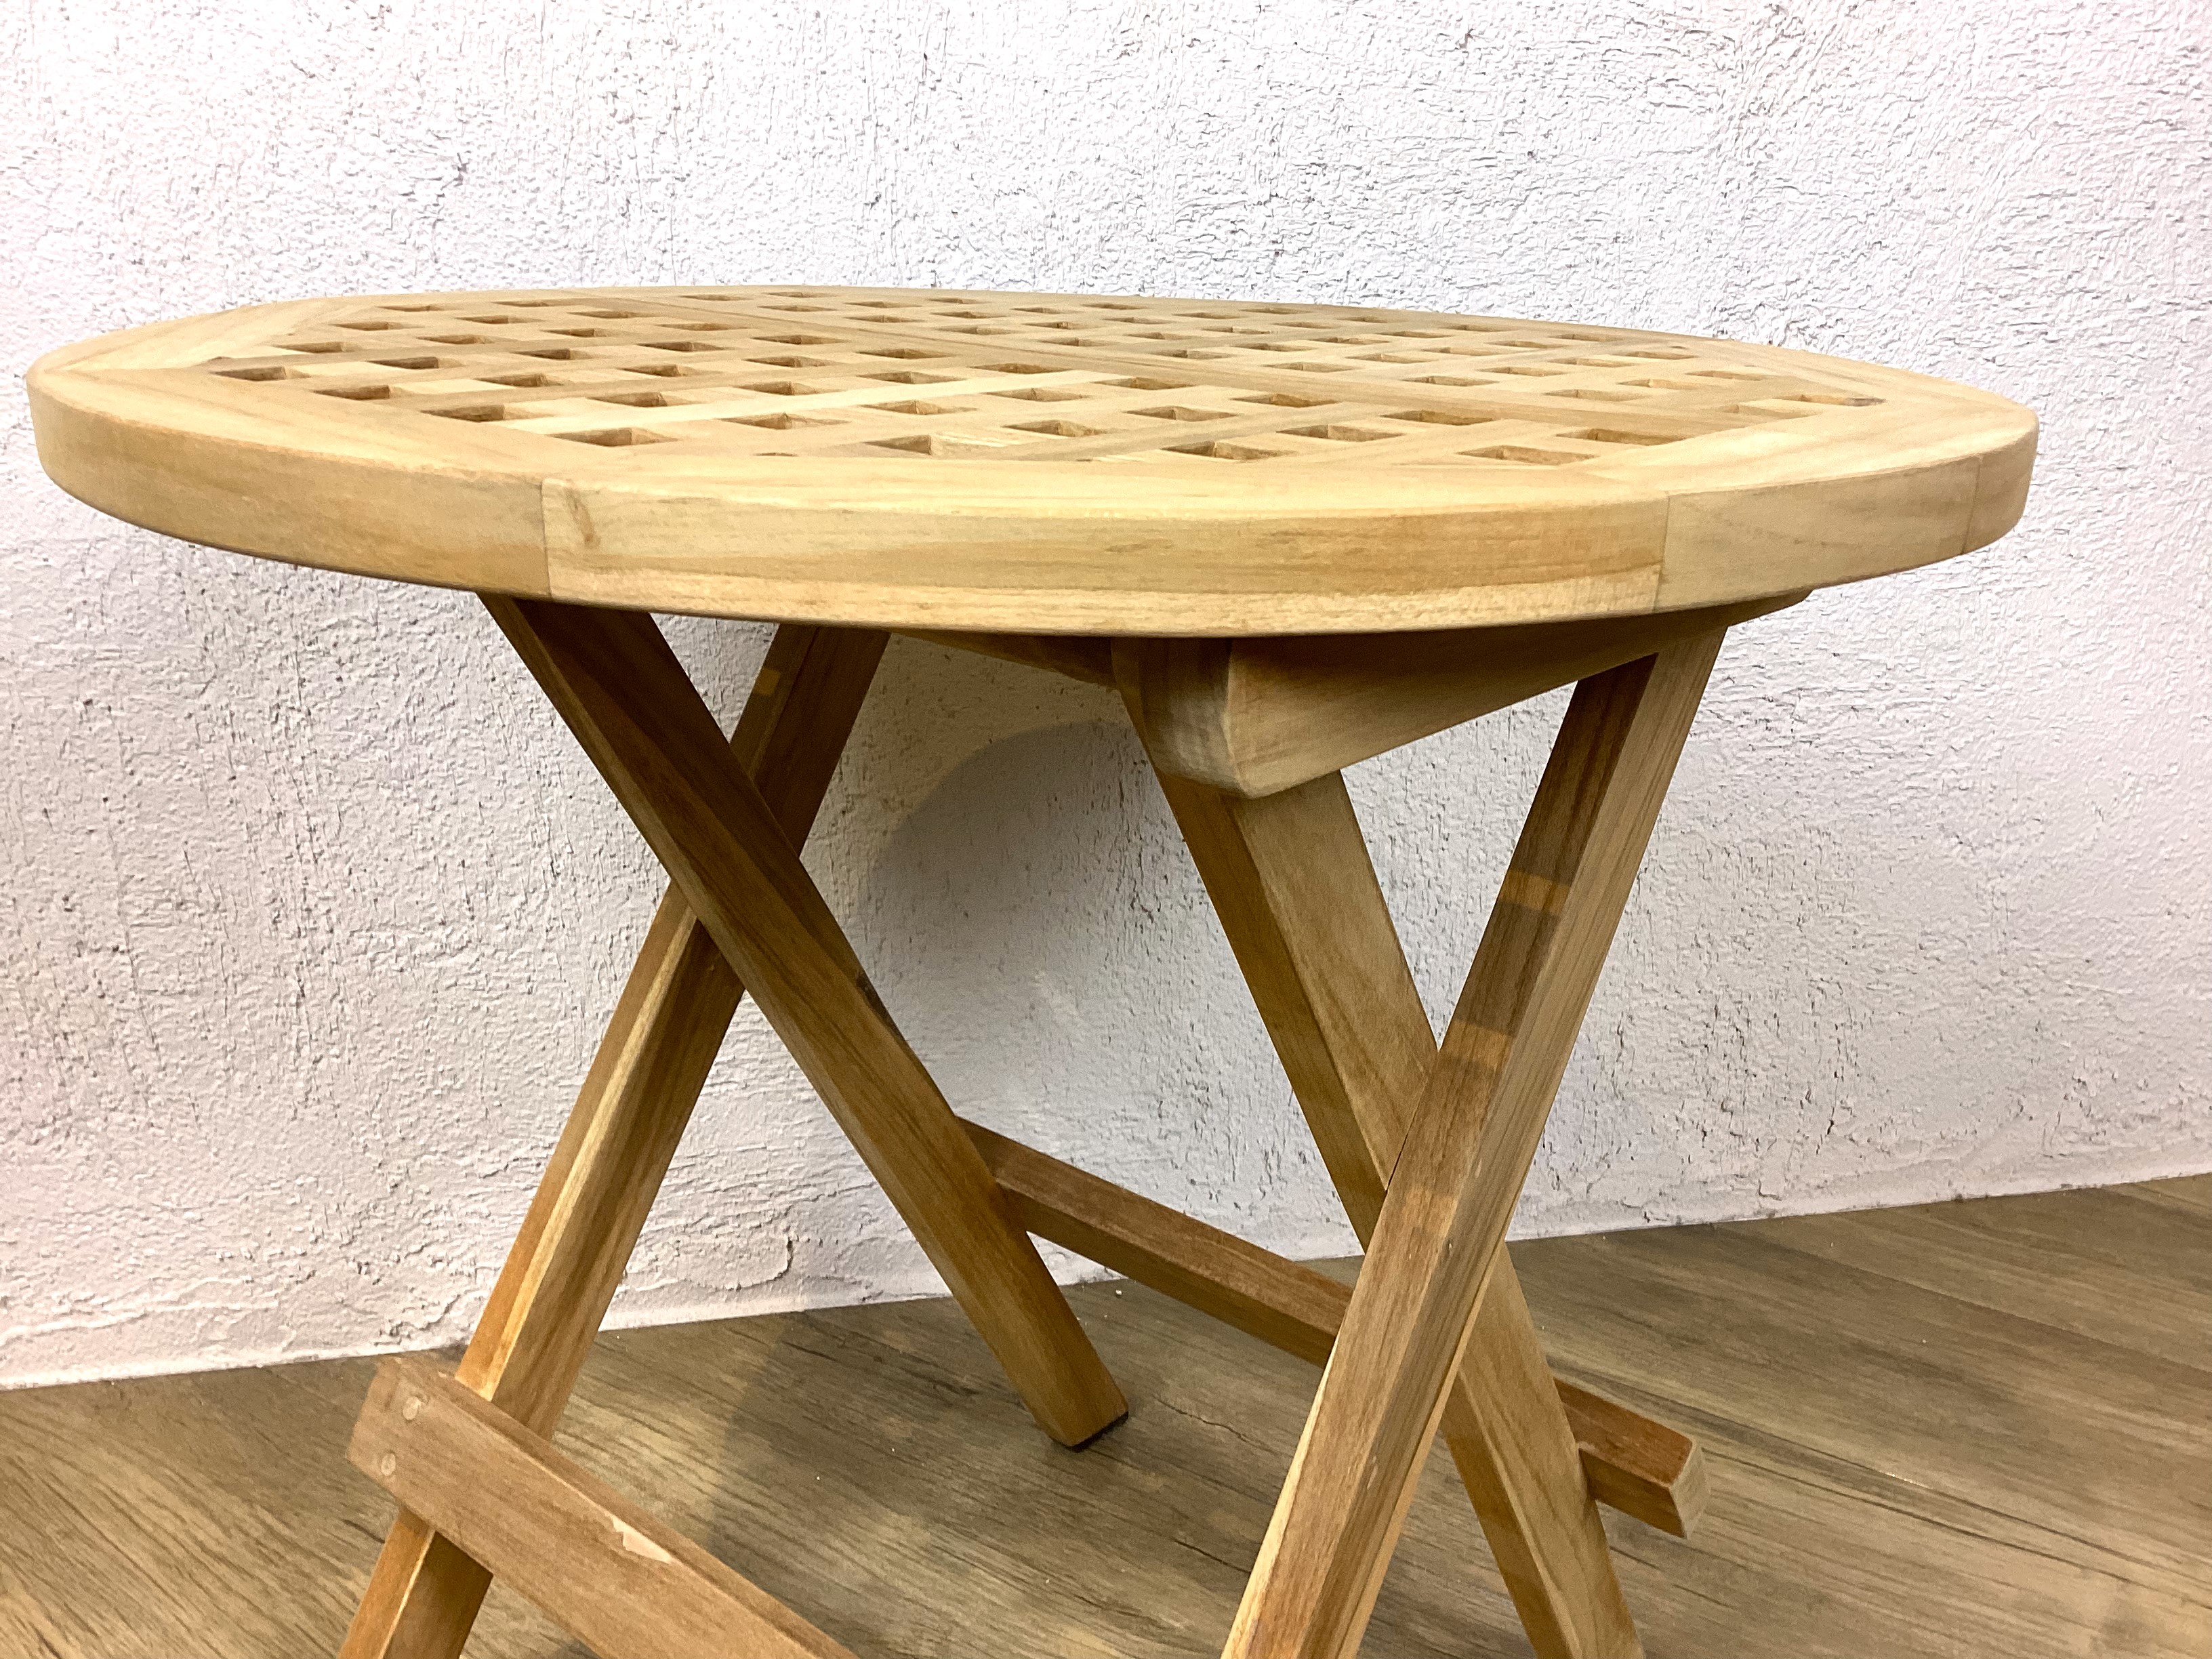 フォールディングテーブル 木製折り畳み サイドテーブル アウトドア 丸 チーク材 tab-061